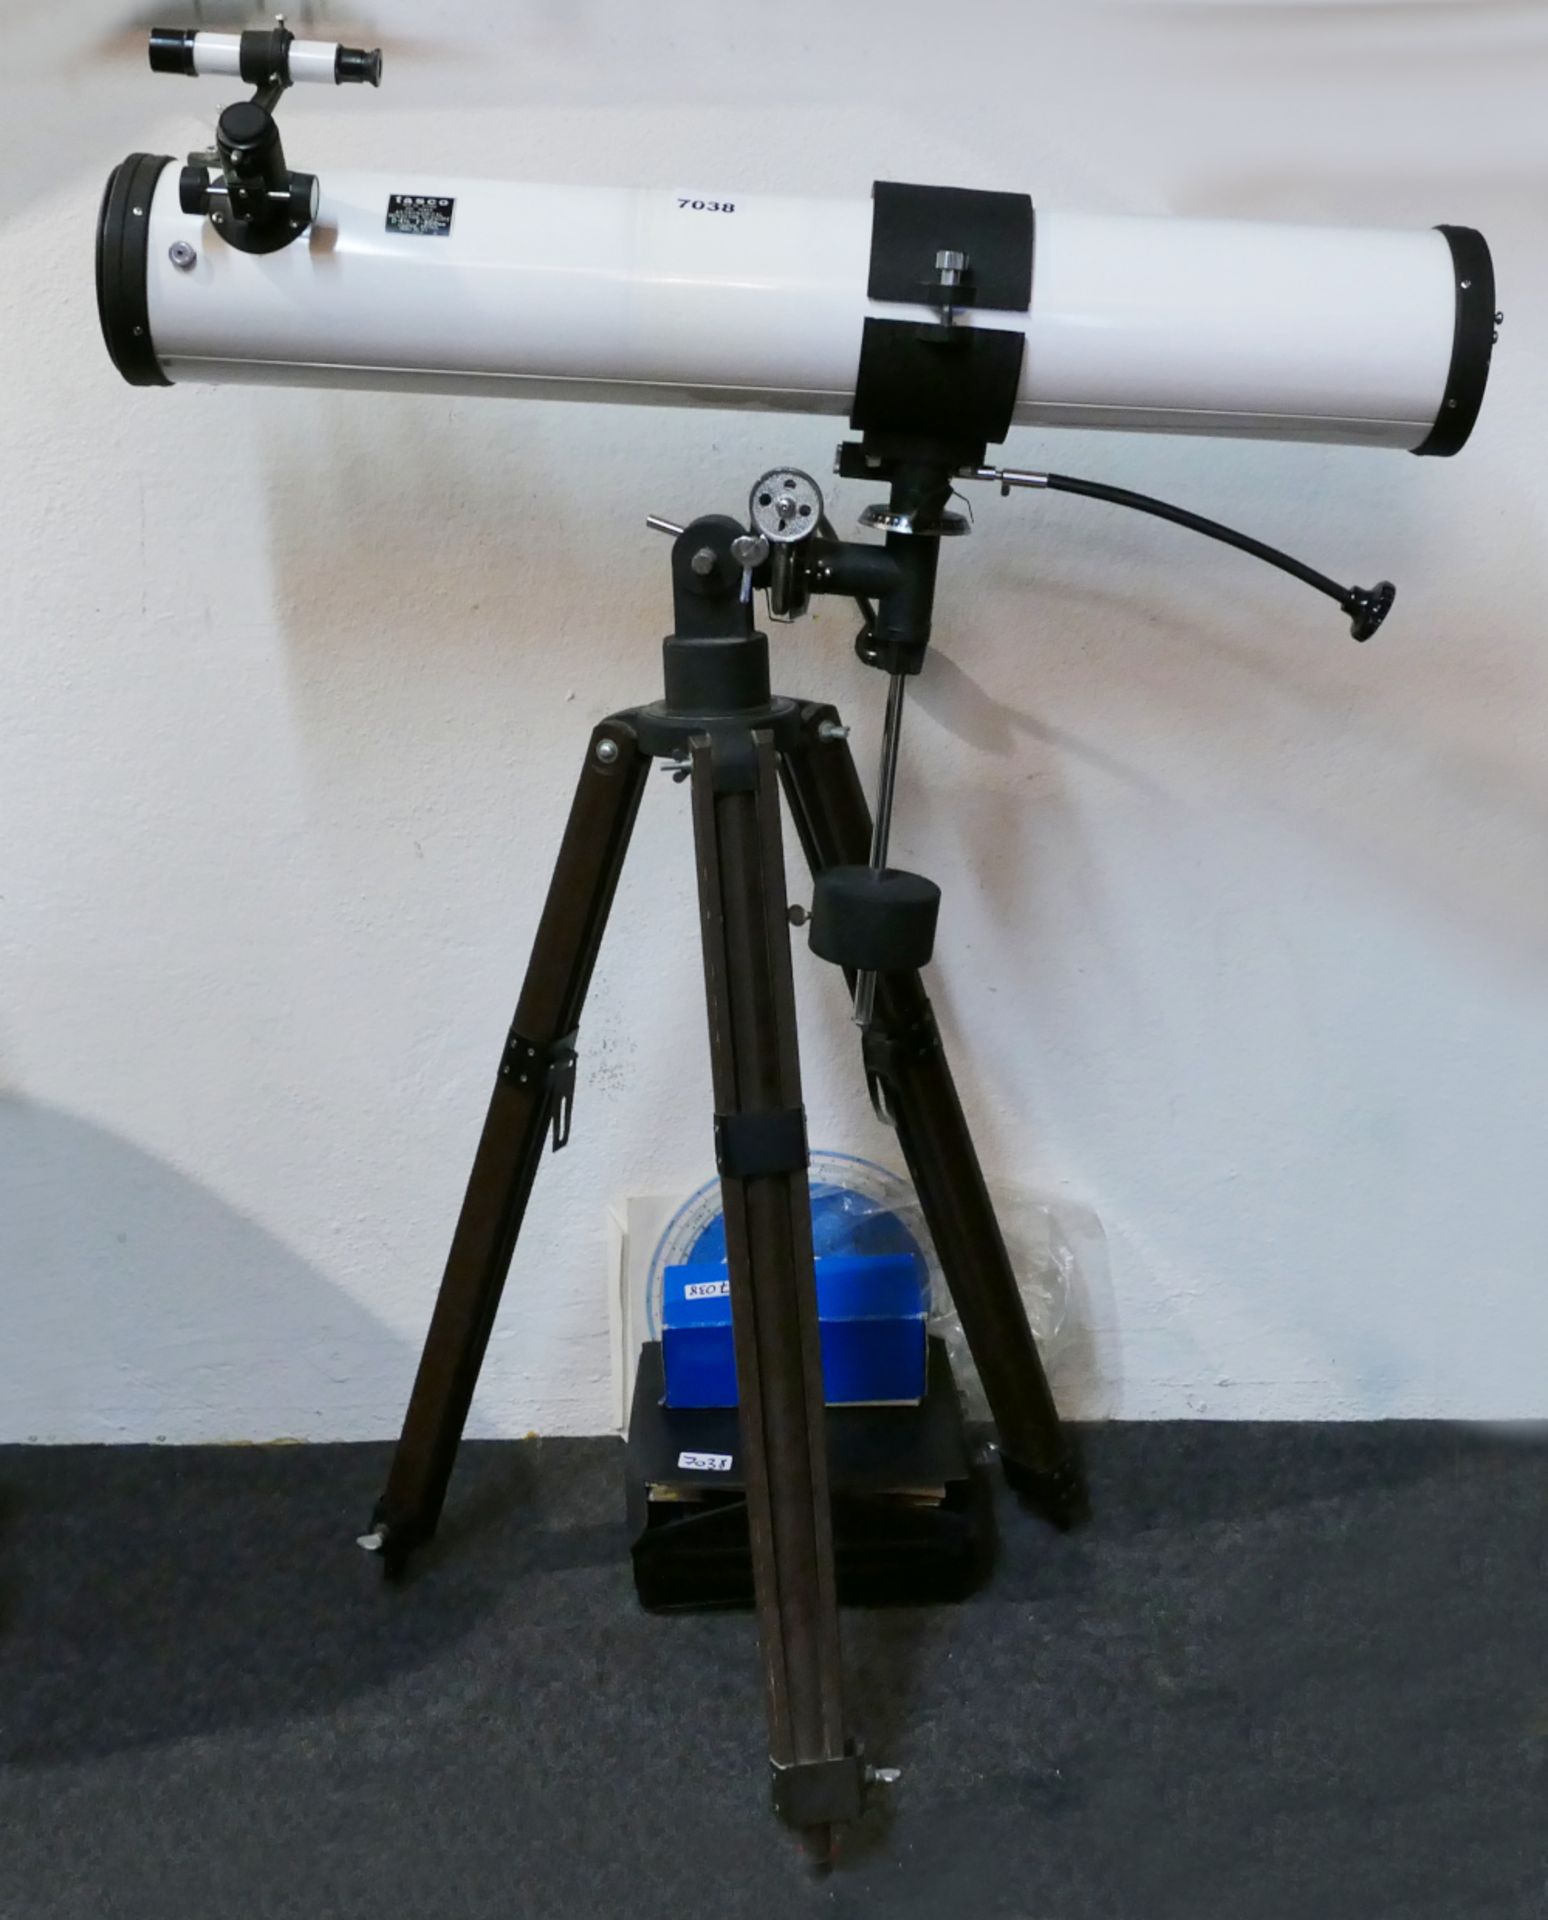 1 astronomisches Reflexionsteleskop TASCO, Japan "No. 11T, D=4,5, F= 900 mm" sowie versch. Bedienung